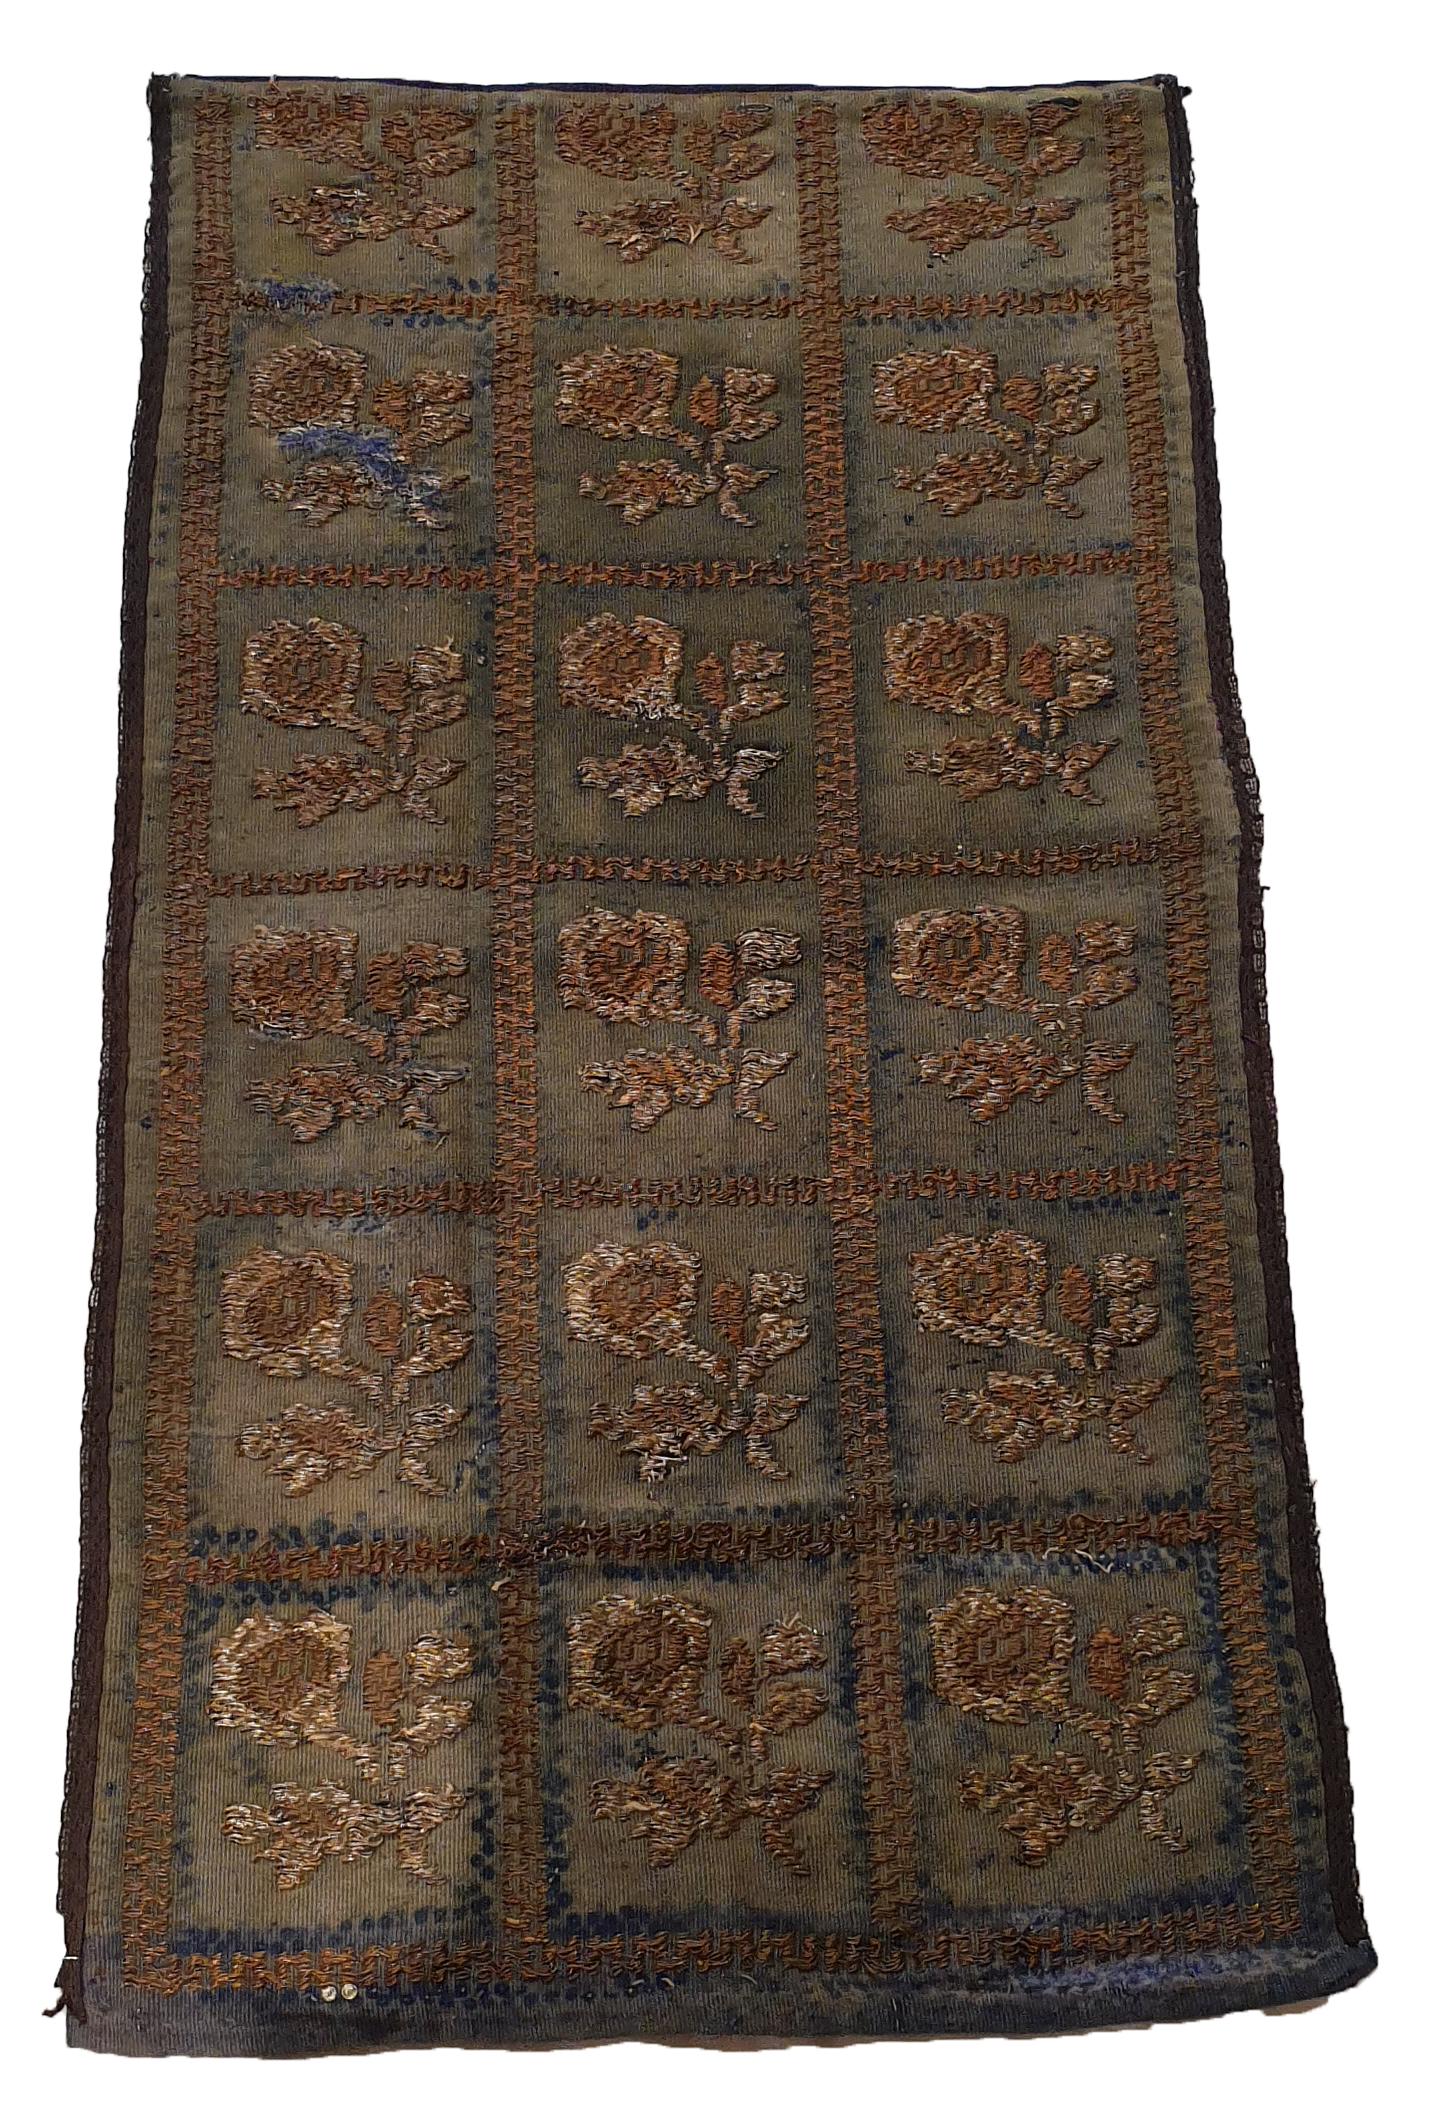 715 - Belle broderie ottomane du milieu du 19ème siècle avec un joli motif floral et de belles couleurs naturelles, entièrement brodée à la main avec du métal sur fond de laine.